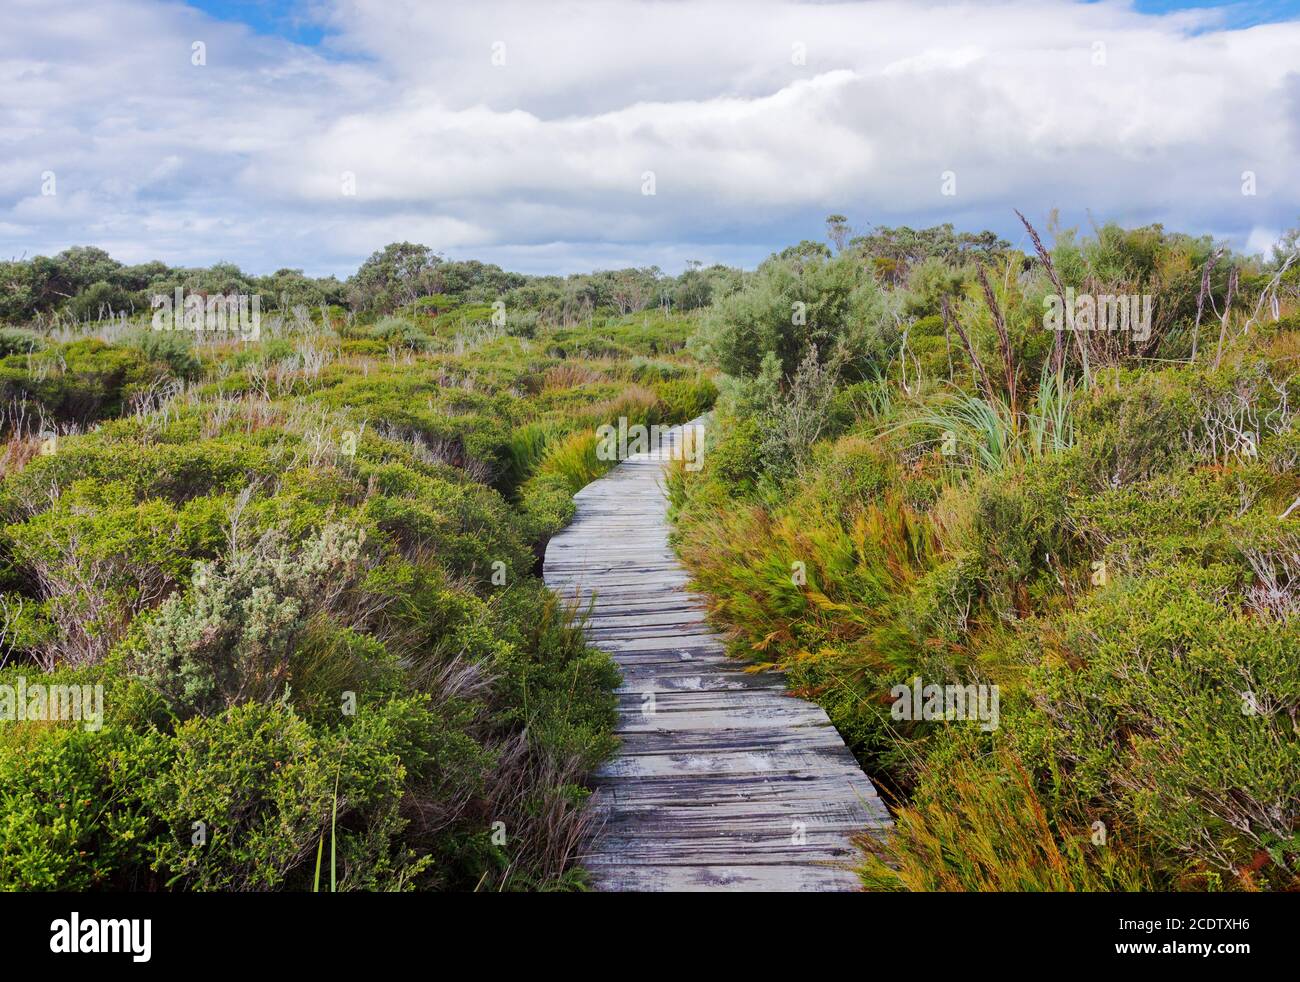 Boardwalk in beautiful wet land landscape Stock Photo